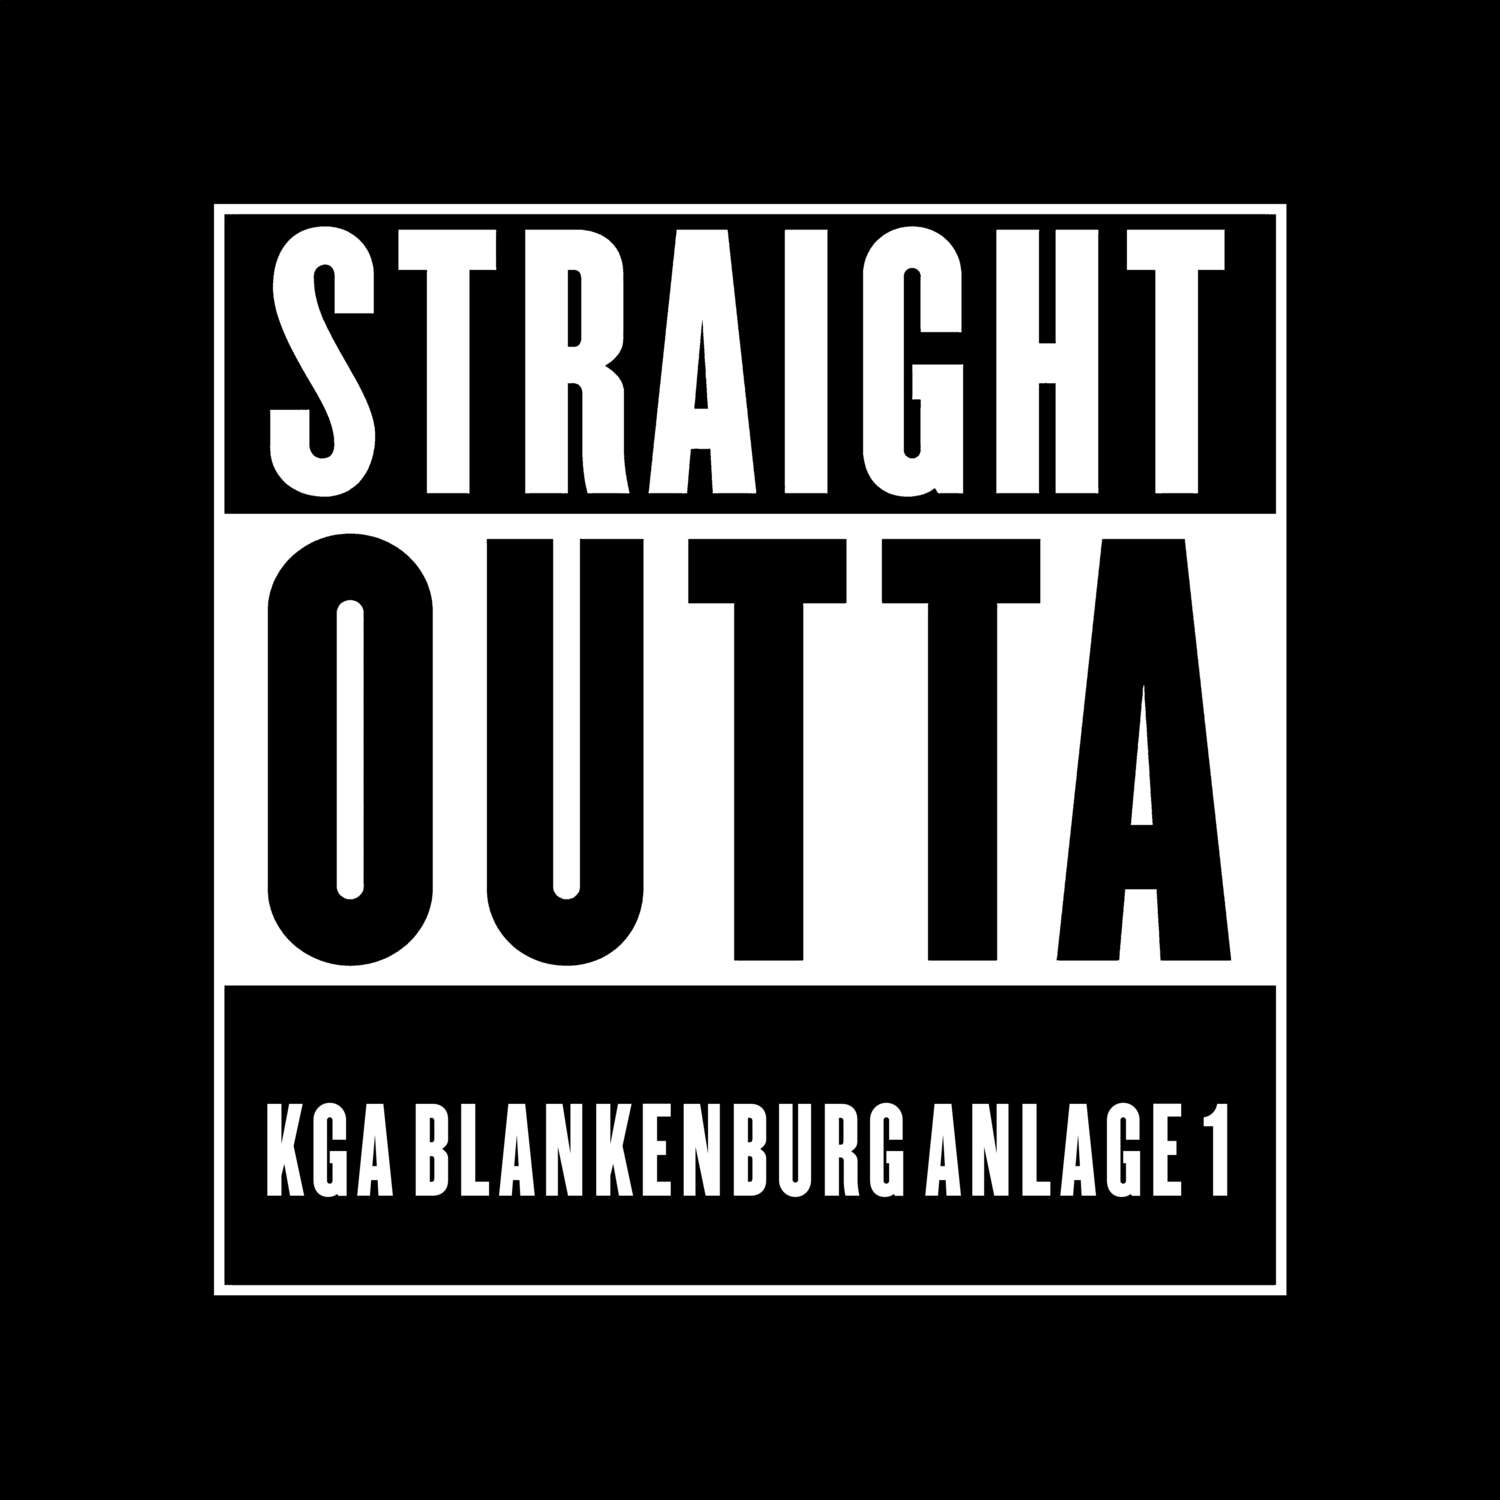 KGA Blankenburg Anlage 1 T-Shirt »Straight Outta«